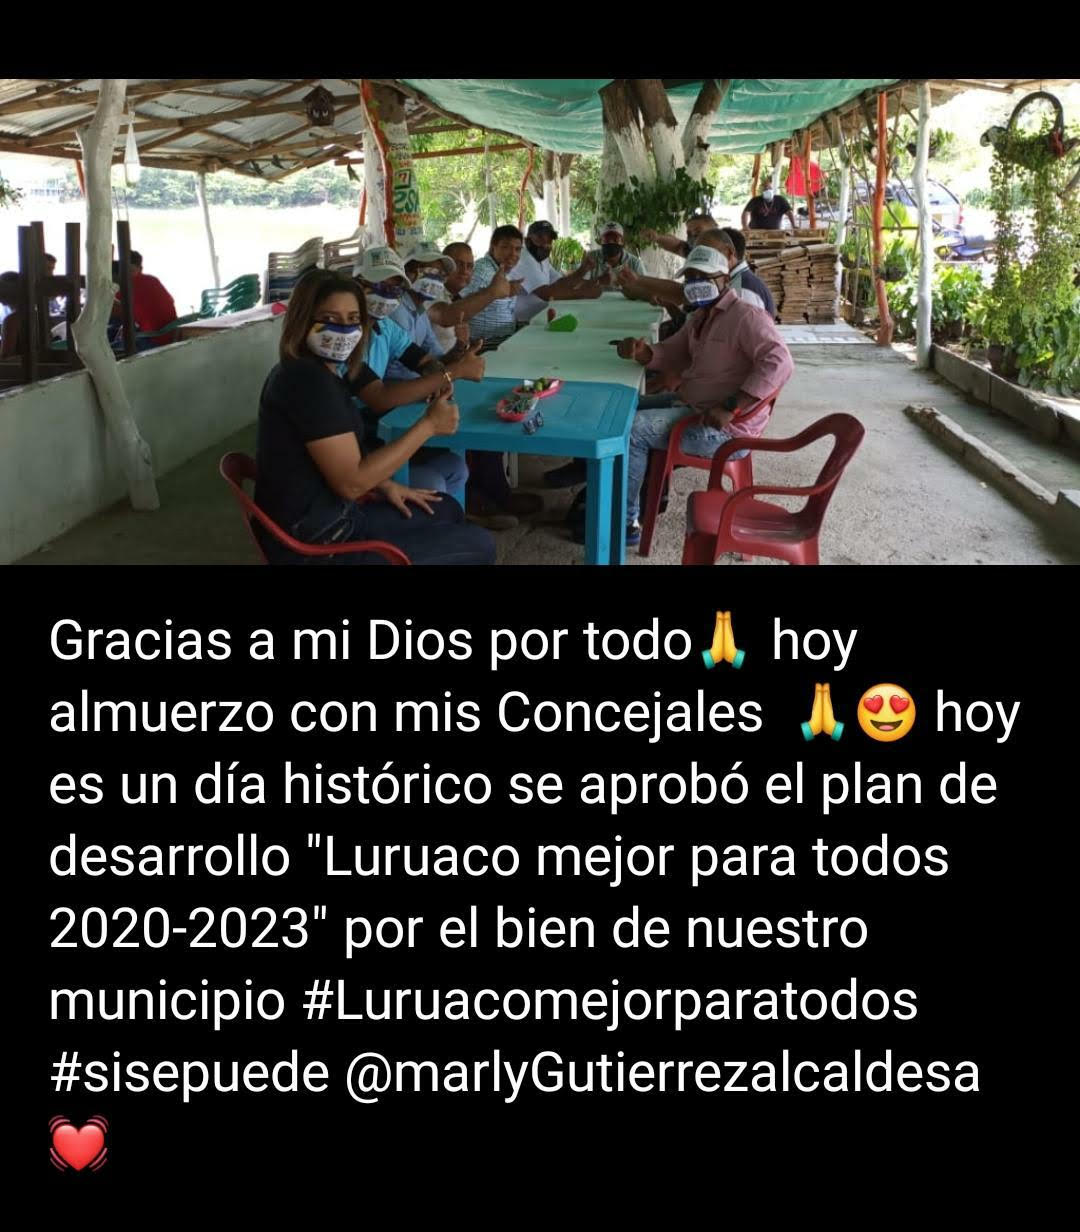 Publicación de Facebook de la alcaldesa de Luruaco.